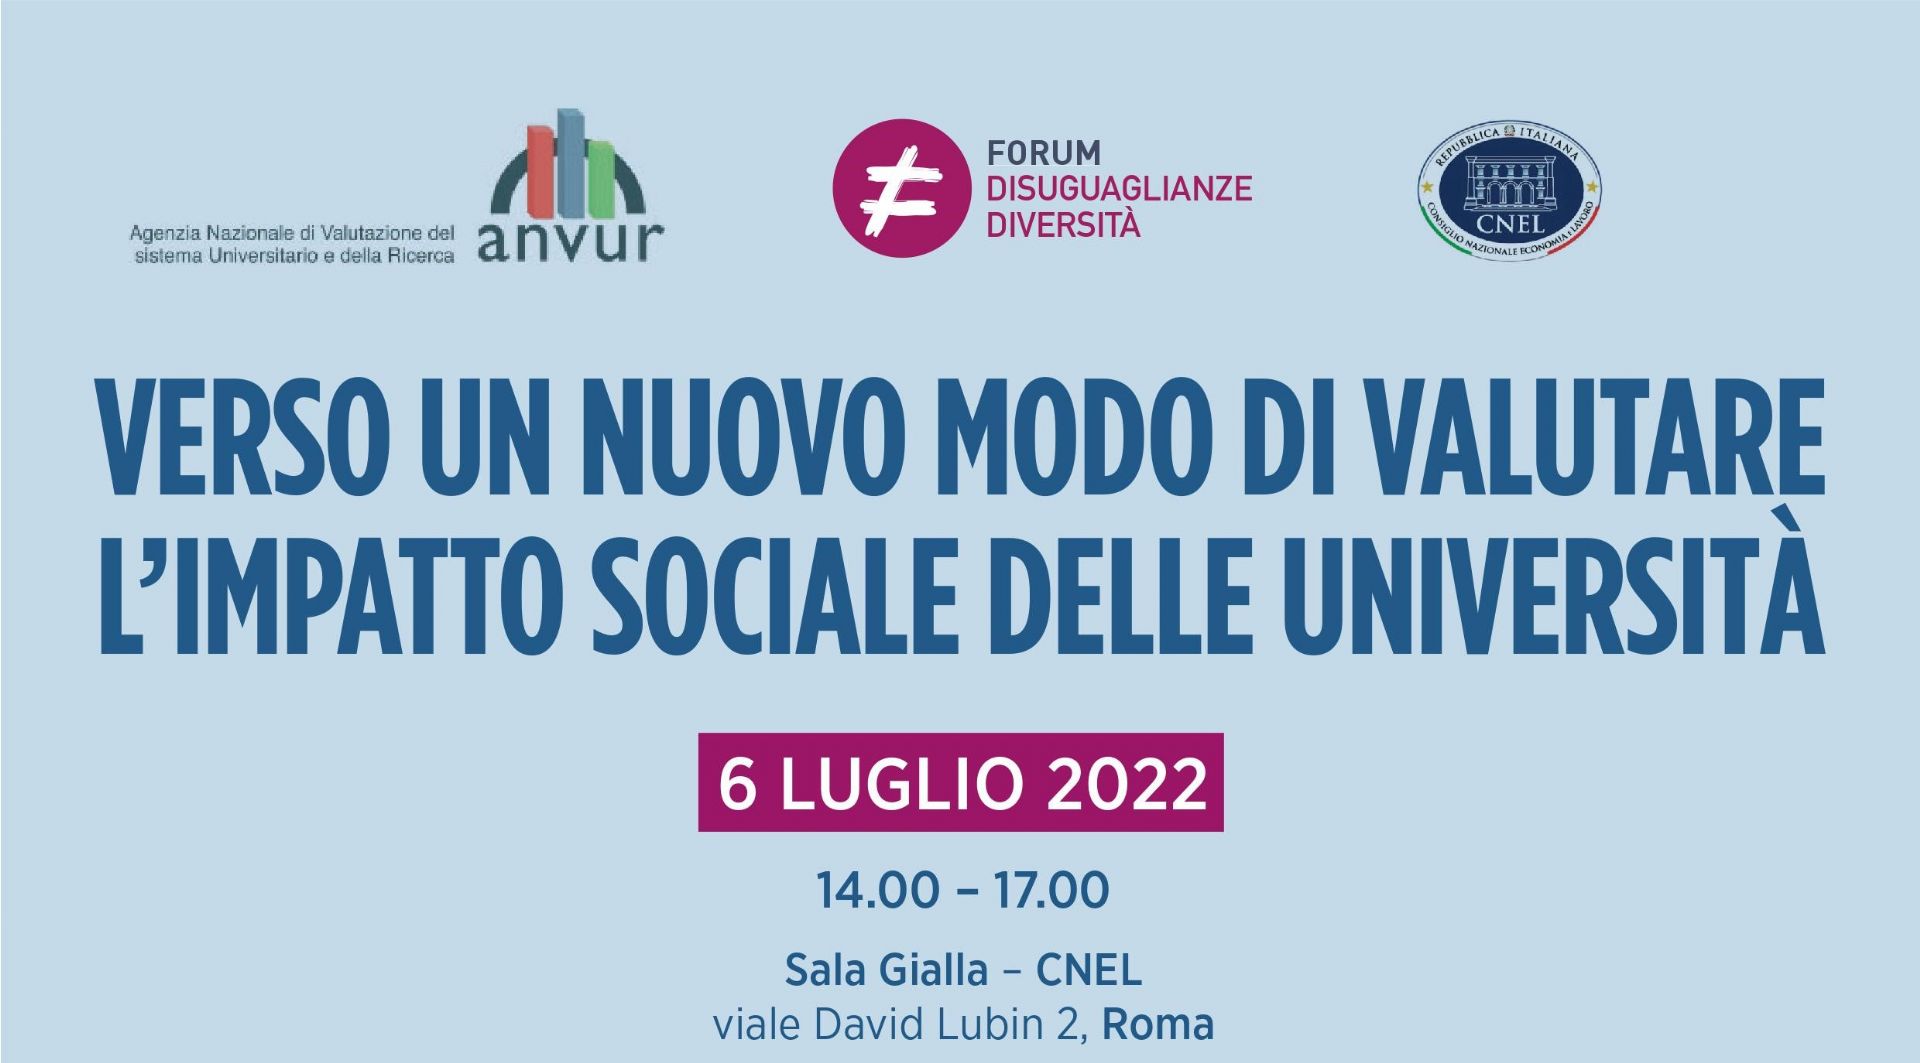 Verso un nuovo modo di valutare l'impatto sociale delle Università evento CNEL ANVUR con Gaetano Fausto Esposito dg Centro Studi Tagliacarne